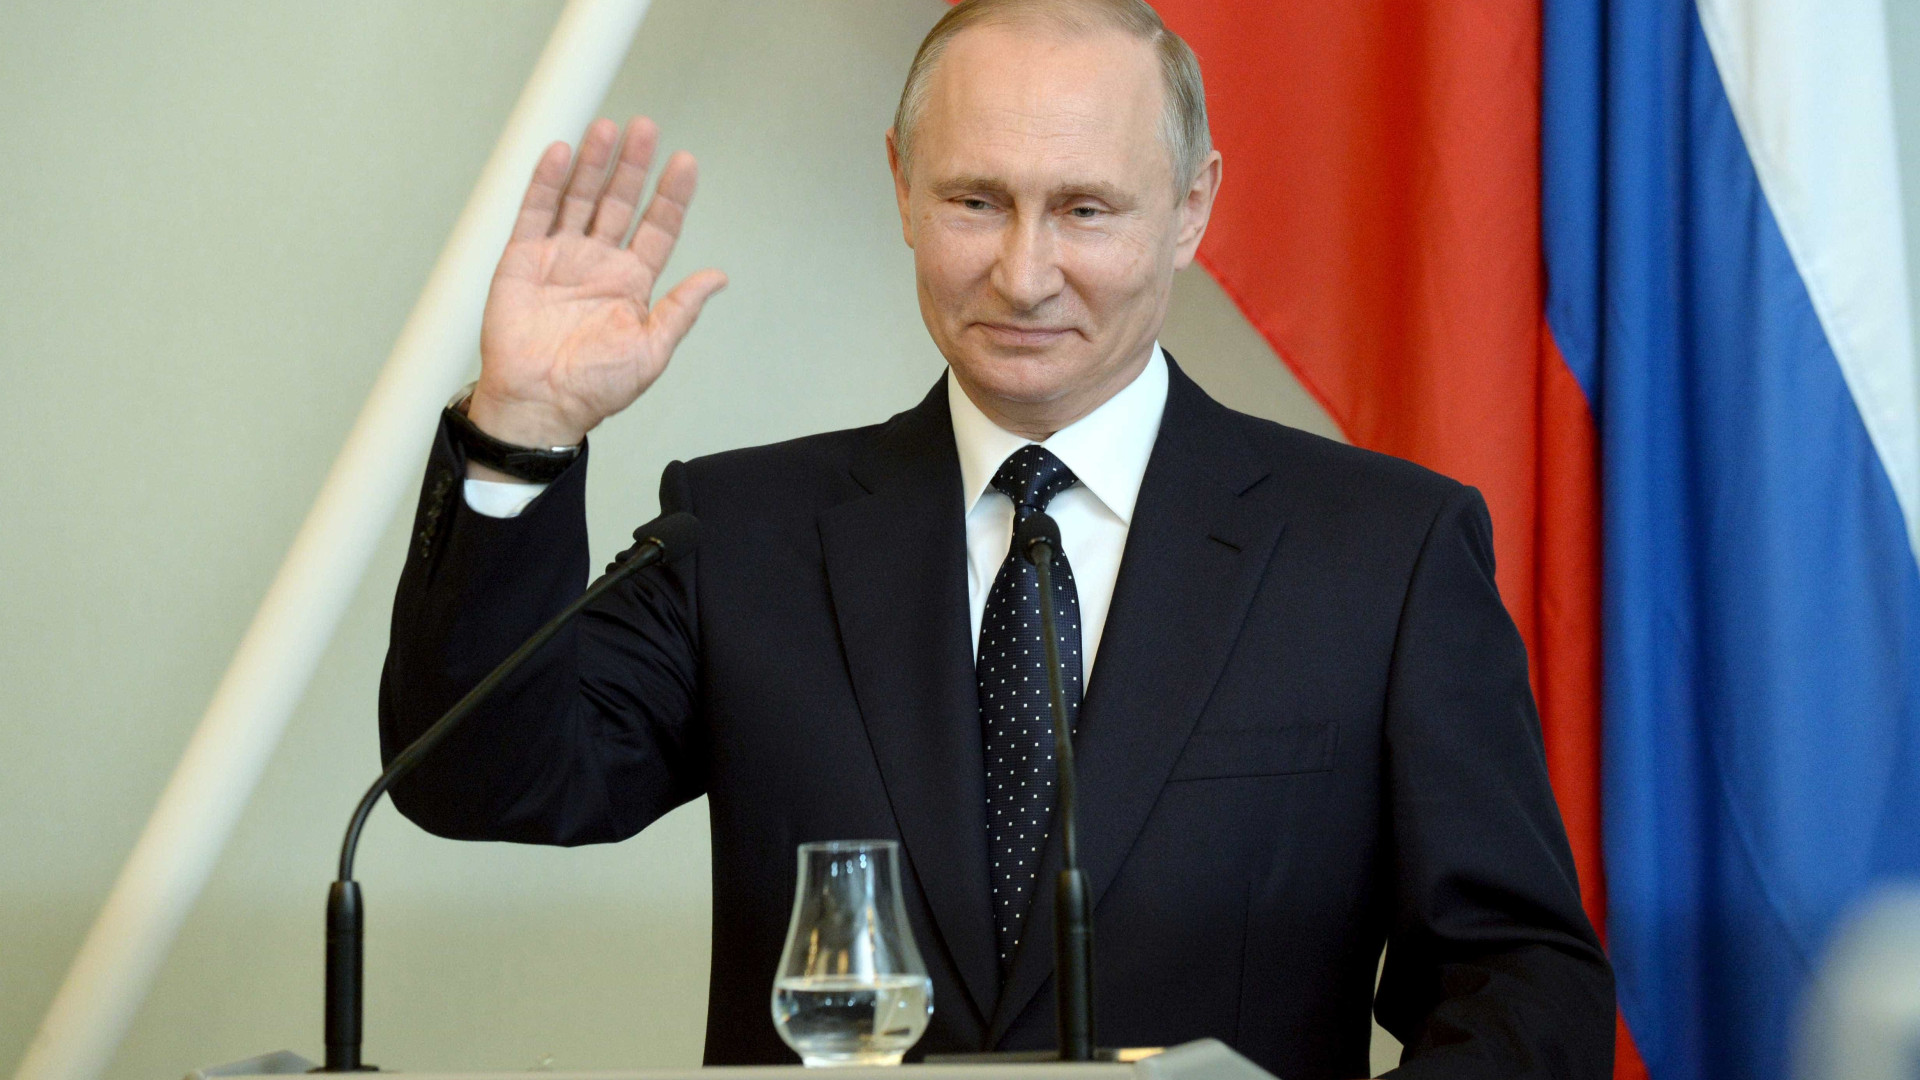 Cibertaques aumentaram por conta das eleições russas, diz empresa